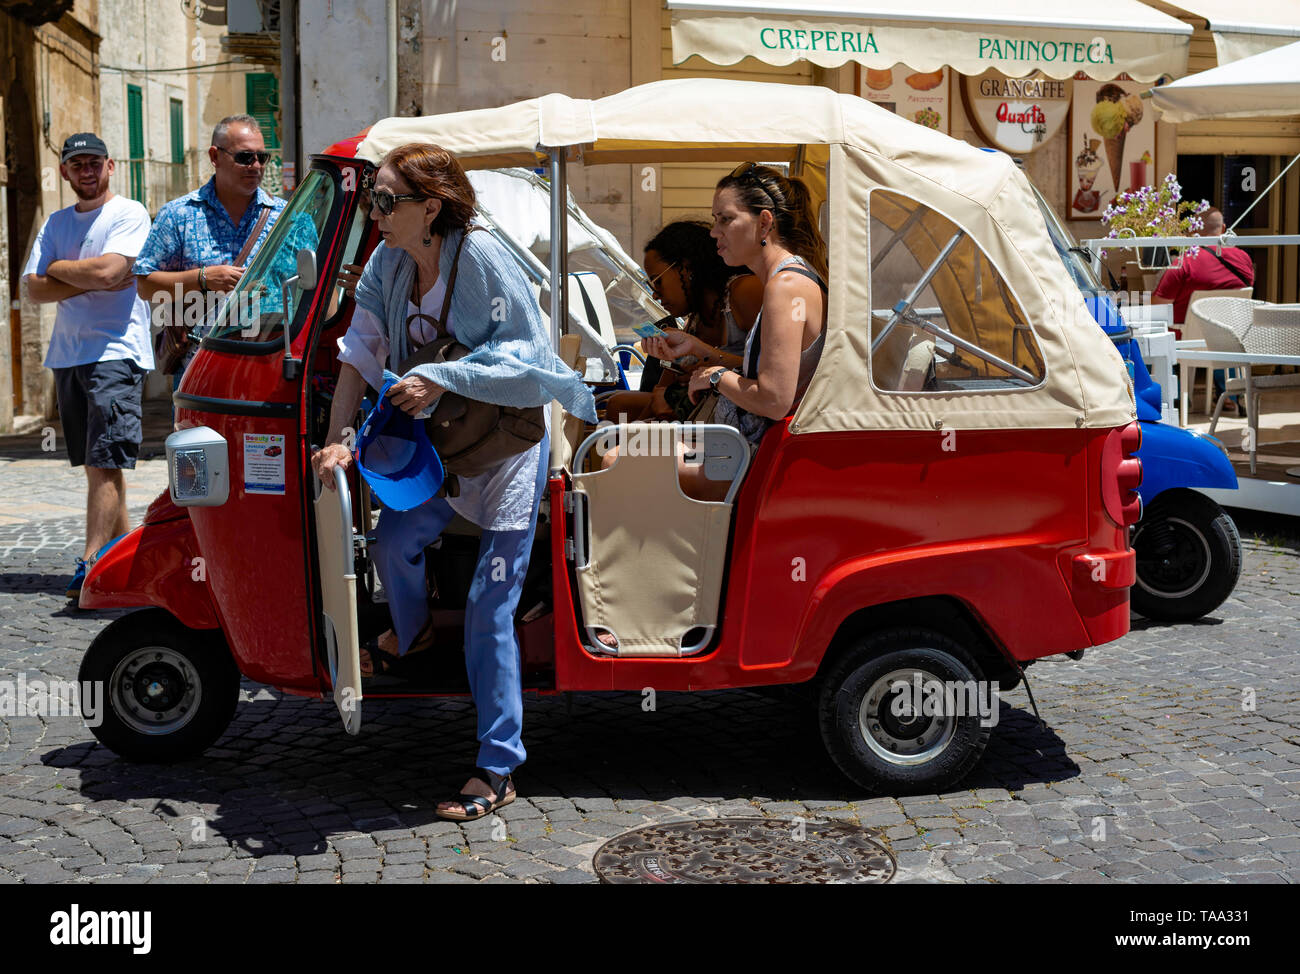 Ostuni, Italien, 24. Juni 2018: Touristen in der charakteristischen Straßen der Altstadt von Ostuni. Einige verwenden spezielle 3-rädrigen Motorrädern zu r Stockfoto